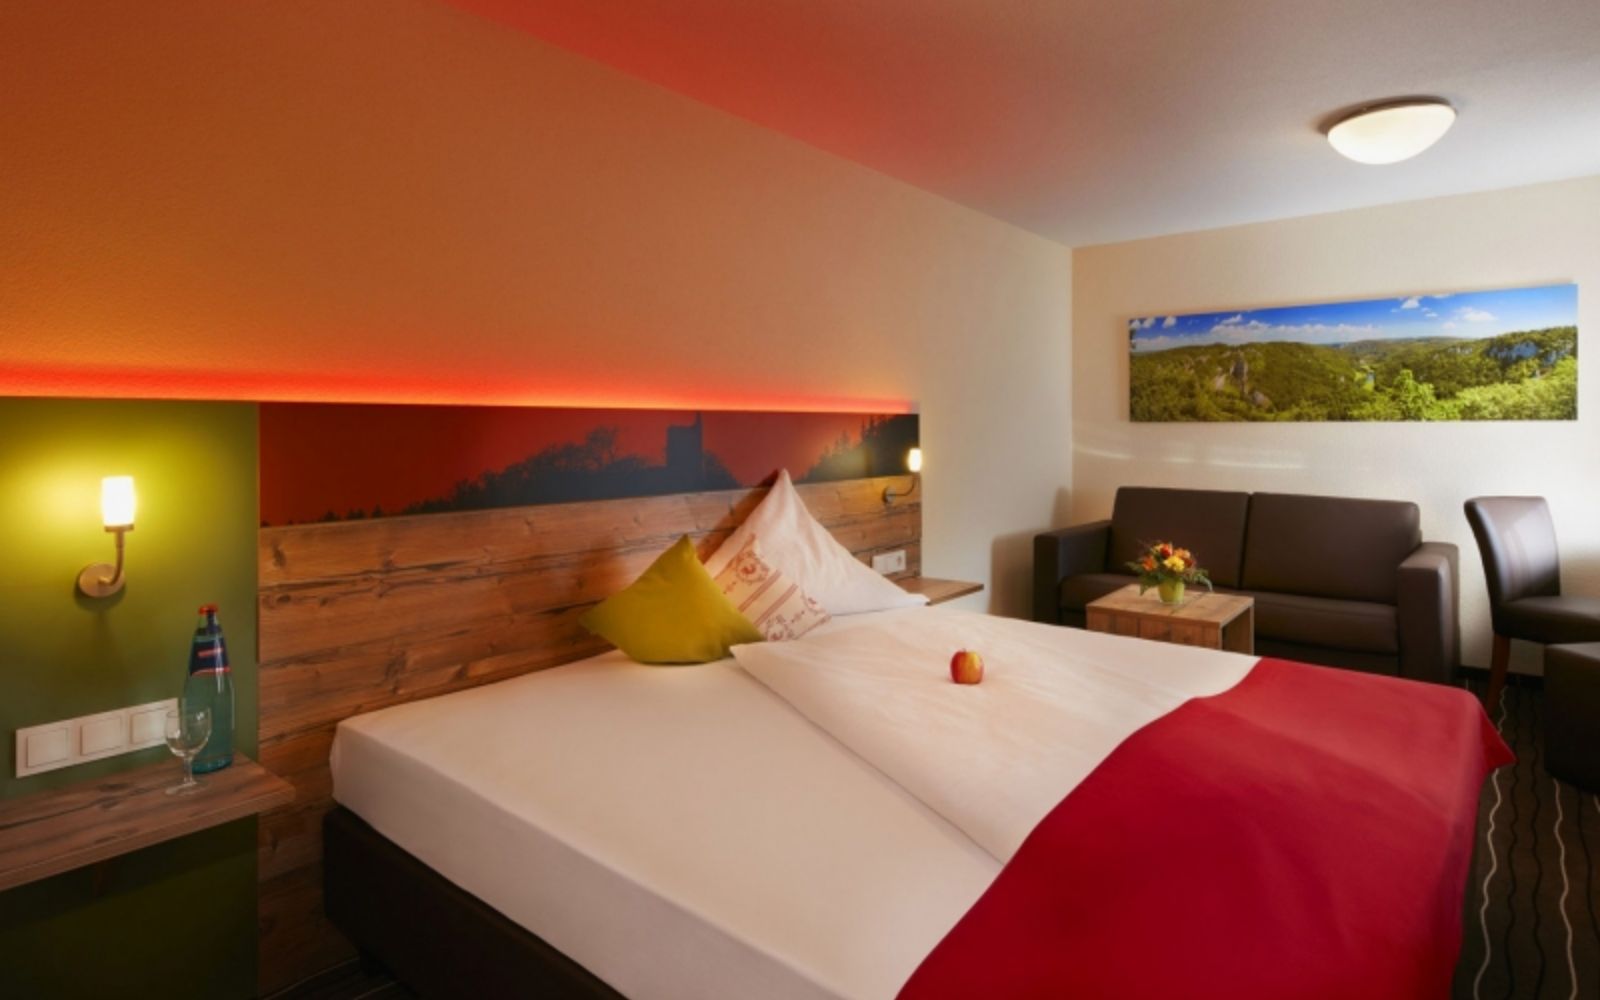 Themenbild von einem Hotelbett in einem modernen Zimmer mit brauner Ledercouch und roter Hintergrundbeleuchtung am Bett